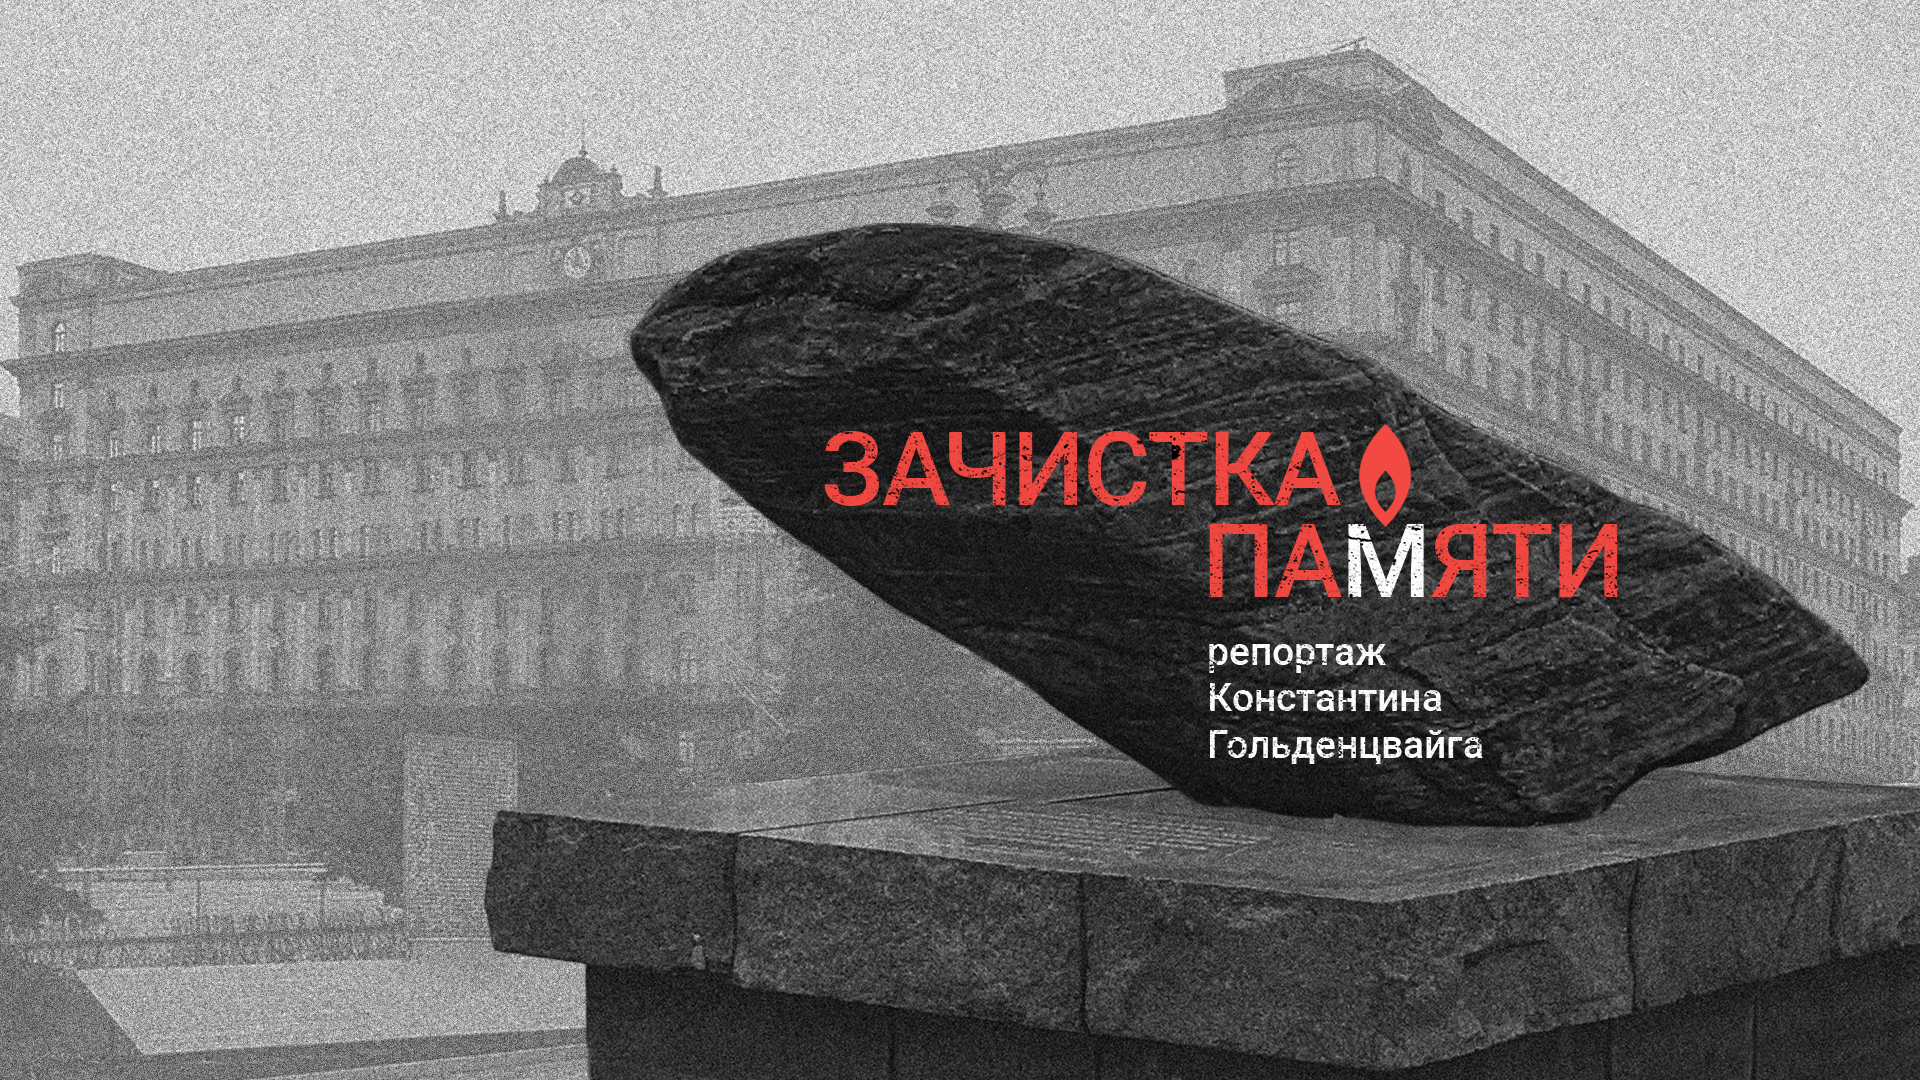 Incontro ’Politica e memoria in Russia: il caso Memorial’ e proiezione del documentario ’Processo alla memoria’